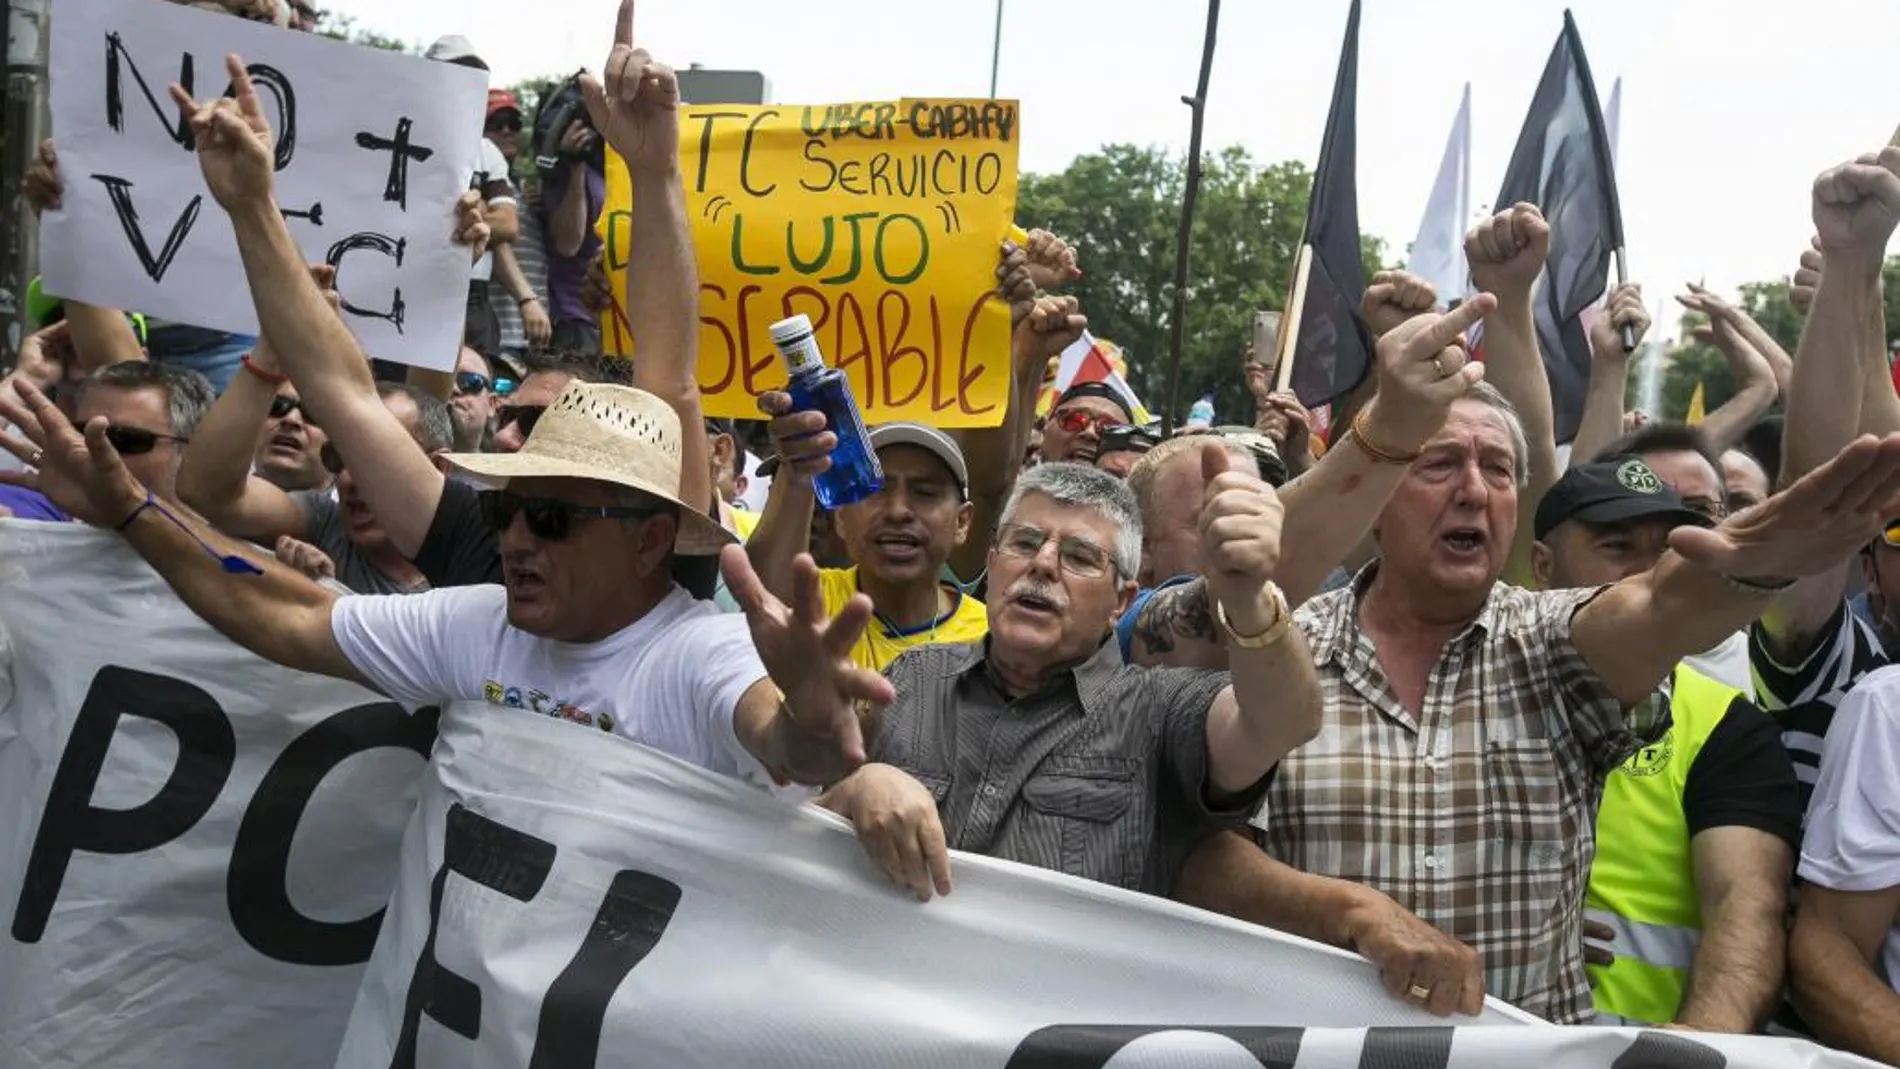 Miles de taxistas procedentes de toda España se han manifestado esta semana en Madrid contra la competencia "desleal"de plataformas como Uber